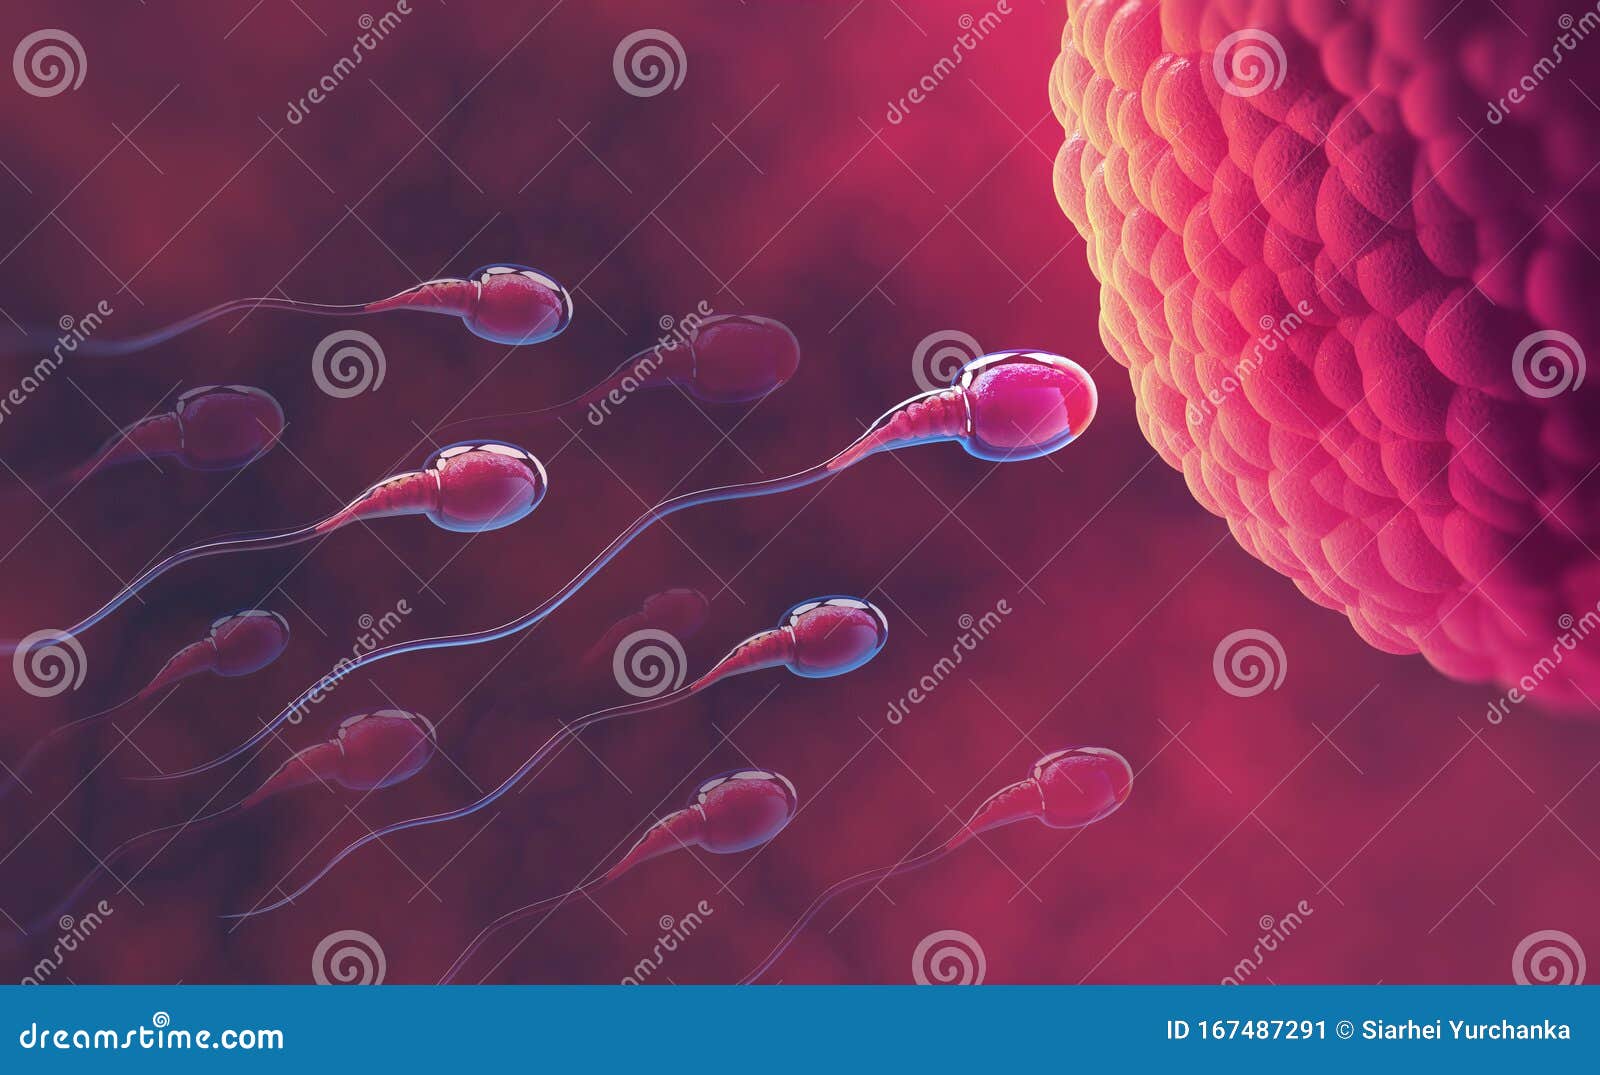 Spermien mikroskop Sperma im